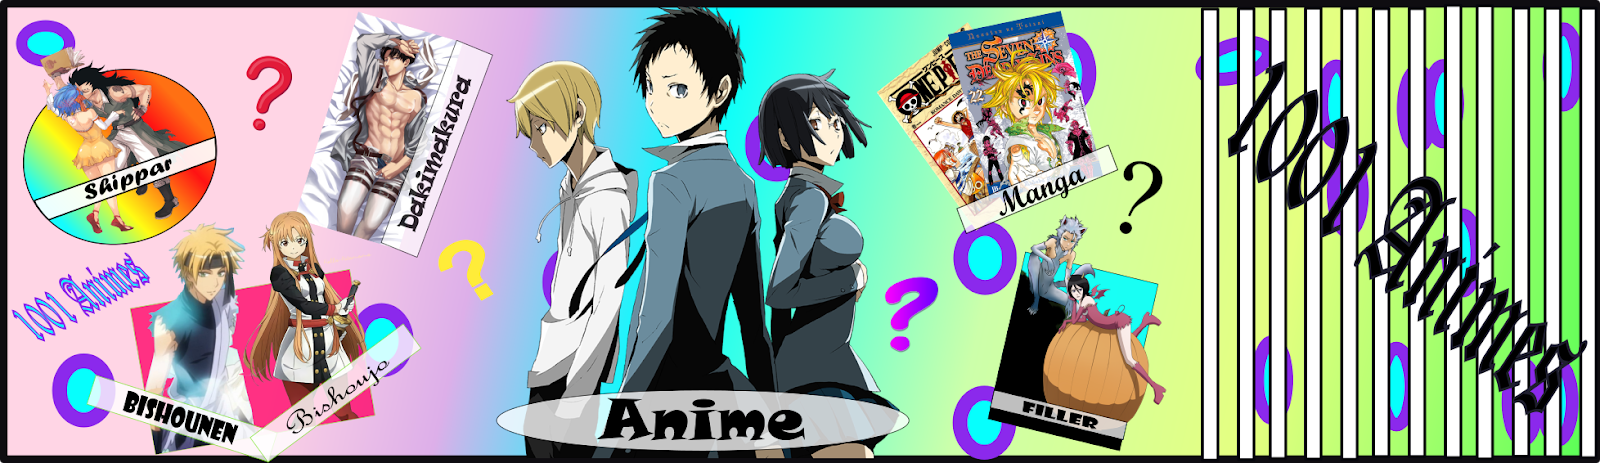 1001 Animes: Curiosidades